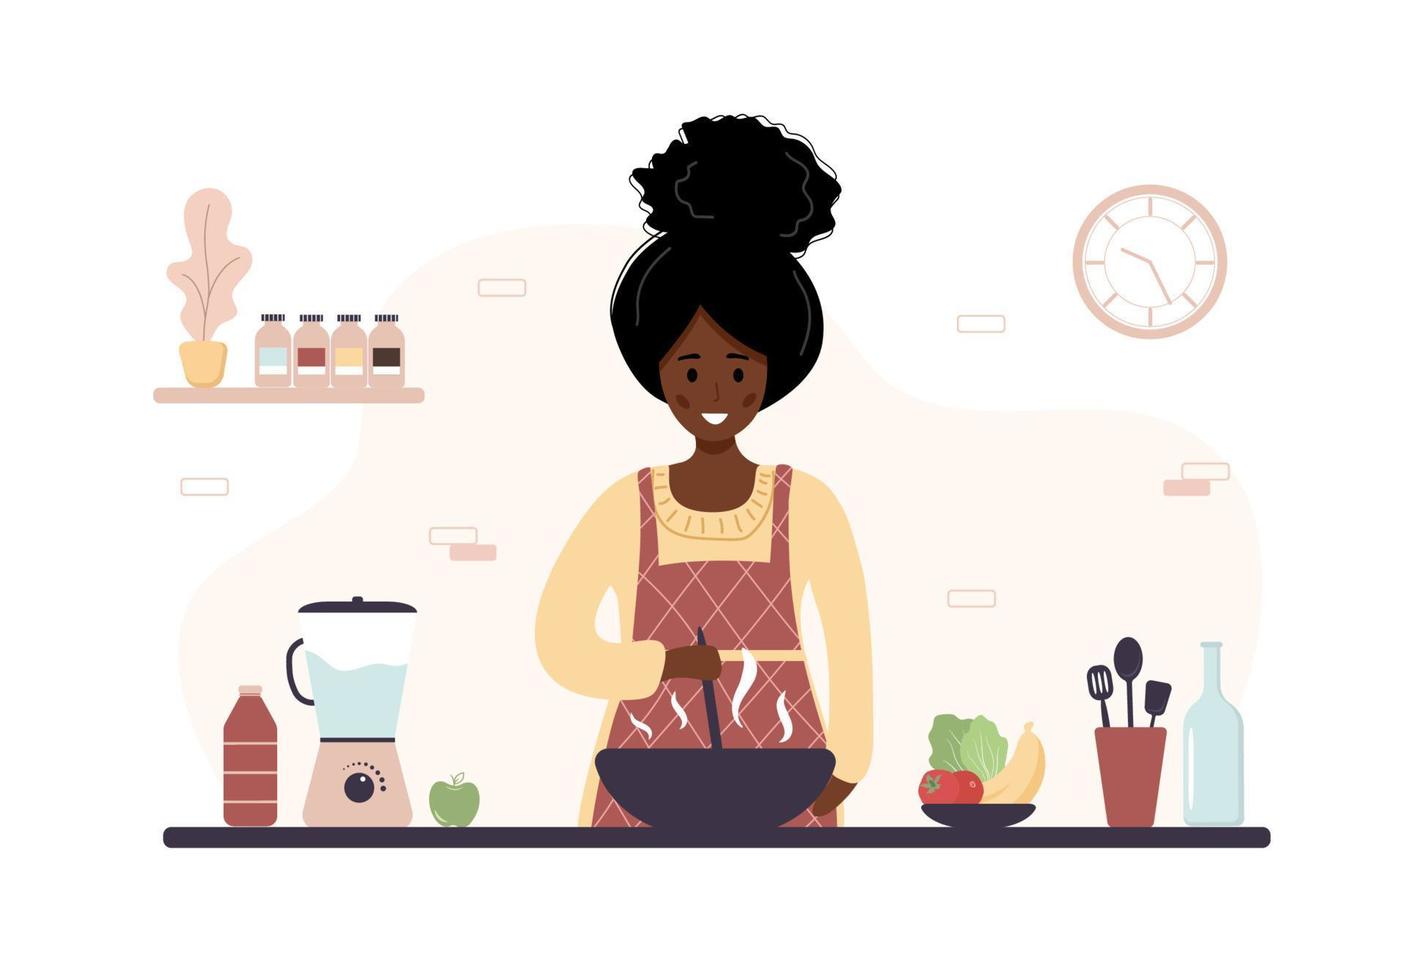 donna africana che cucina in cucina. ragazza che prepara pasti fatti in casa per pranzo o cena. preparazione pasticceria fatta in casa o da forno. illustrazione vettoriale cartone animato piatto.